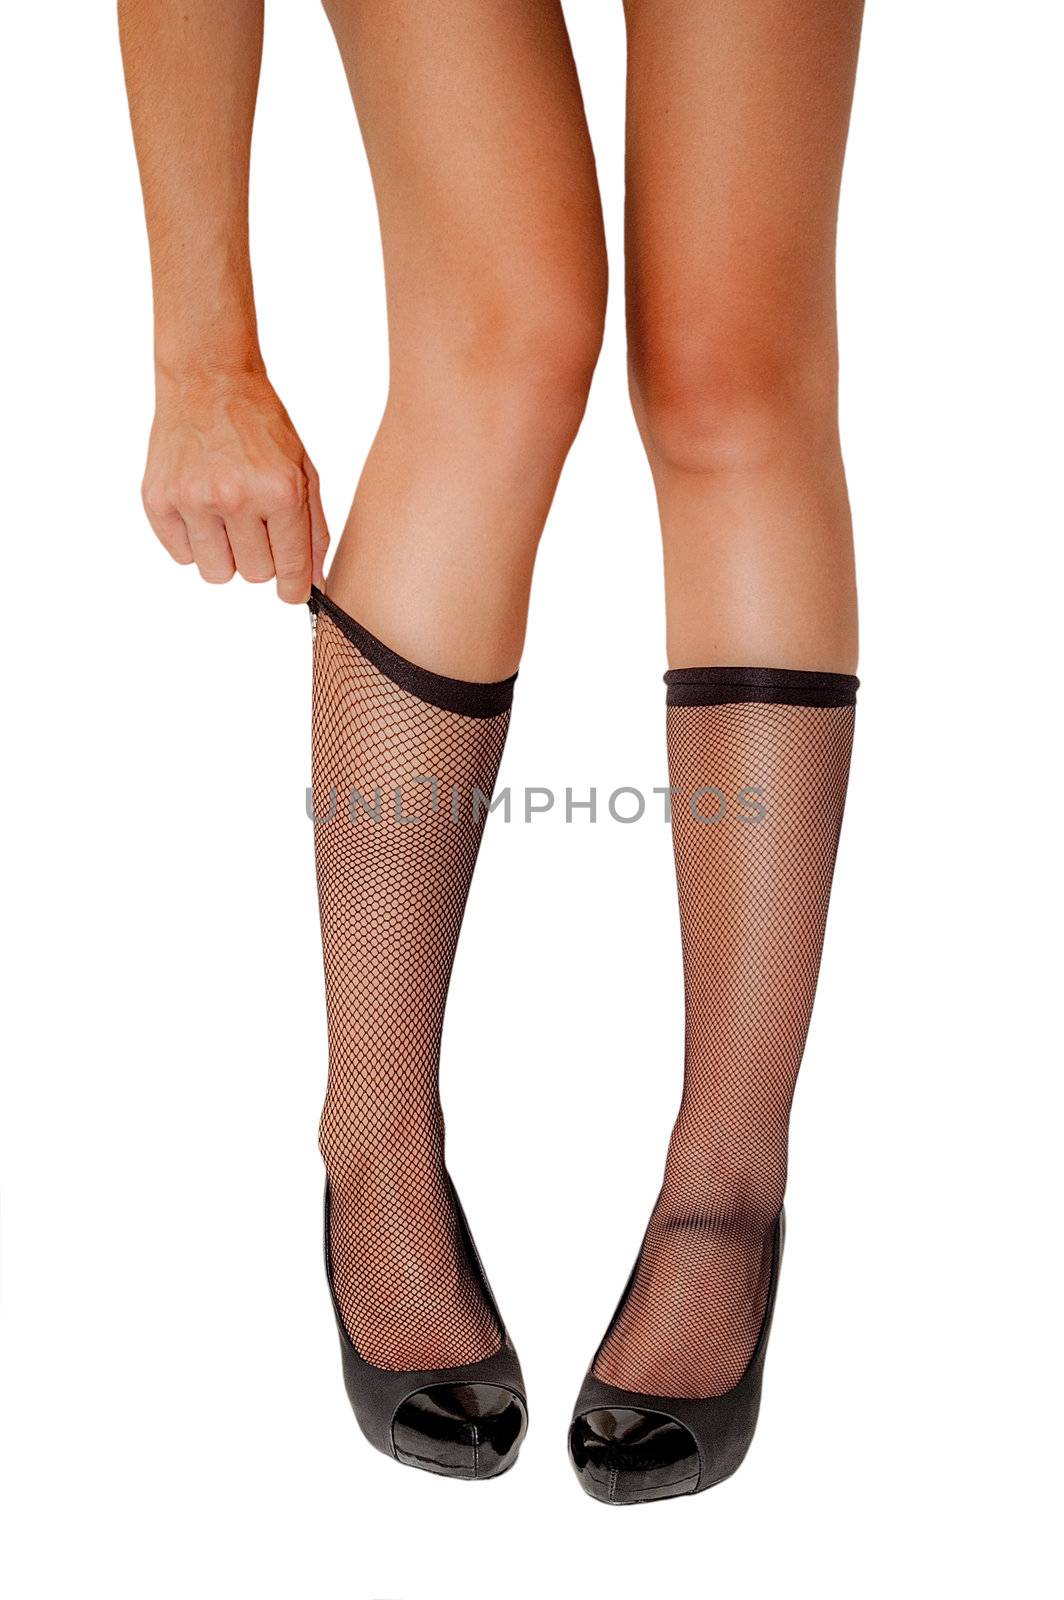 Woman's legs fetish by saap585